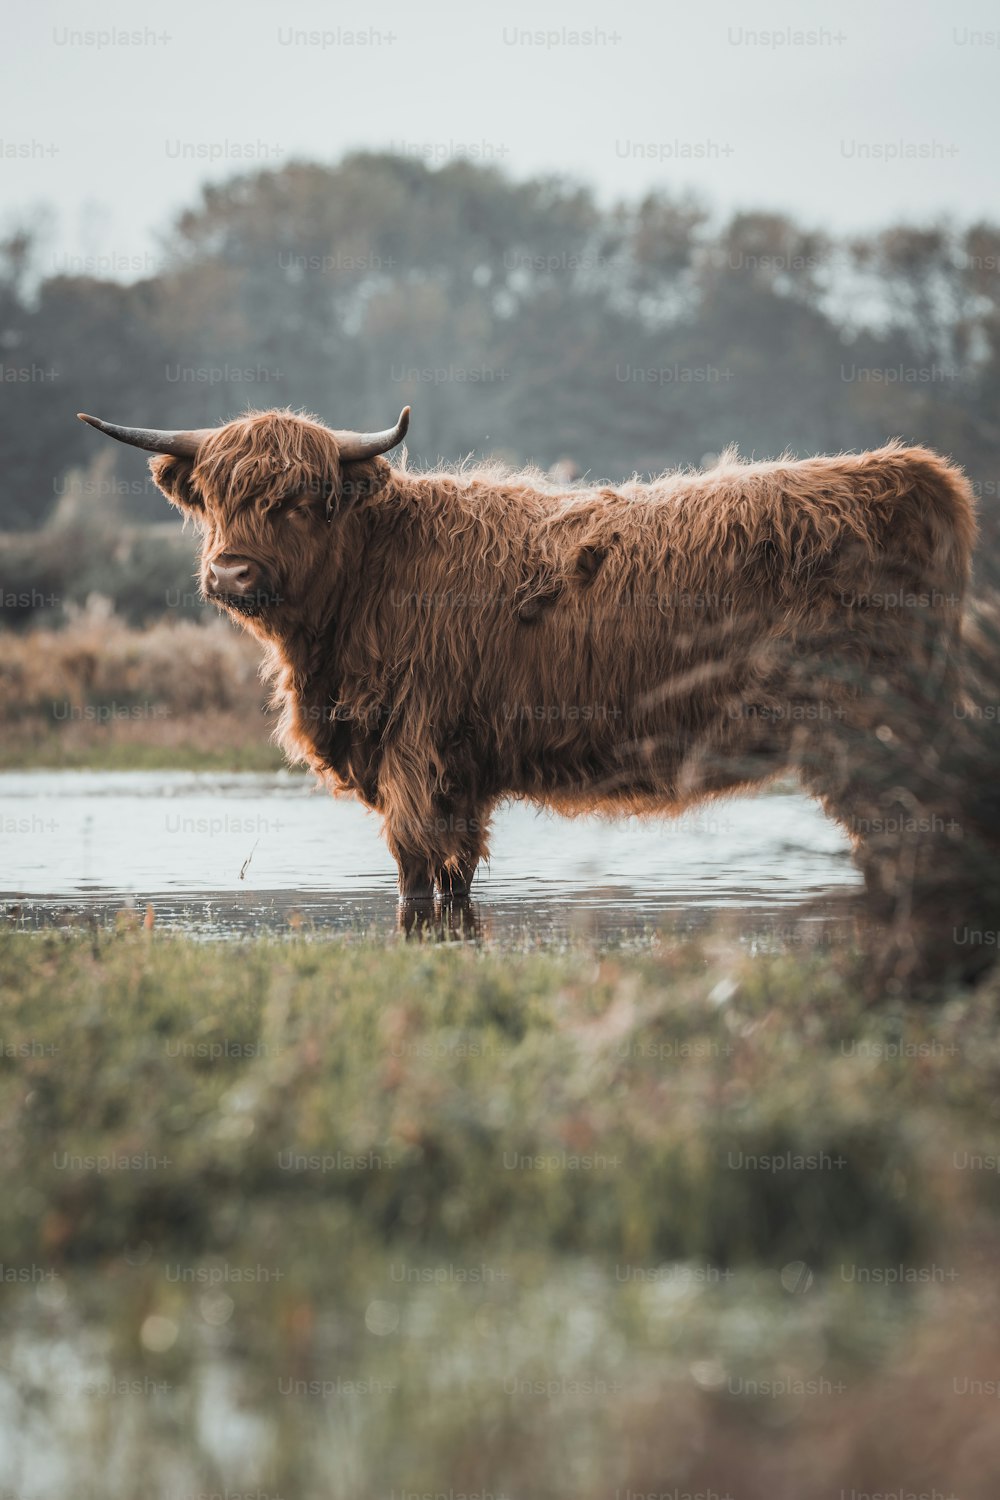 풀밭 위에 서 있는 갈색 소